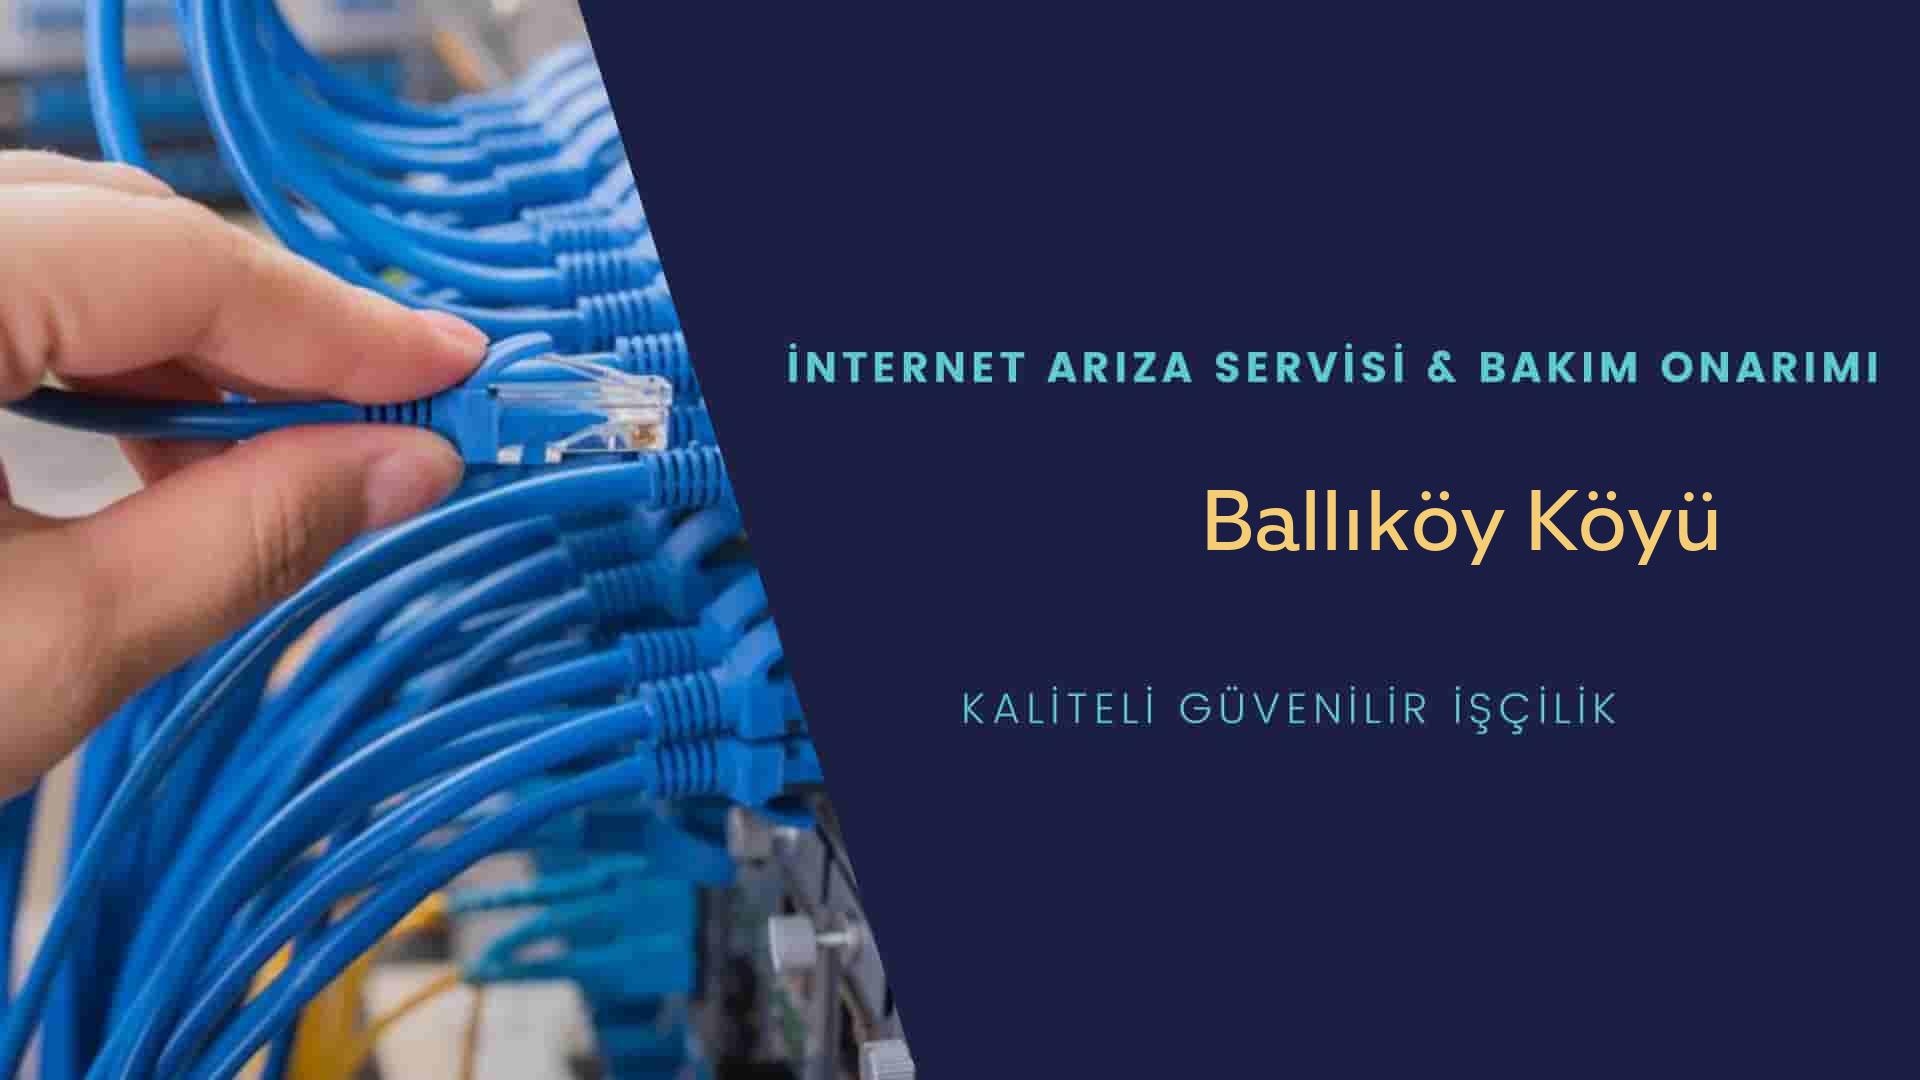 Ballıköy Köyü internet kablosu çekimi yapan yerler veya elektrikçiler mi? arıyorsunuz doğru yerdesiniz o zaman sizlere 7/24 yardımcı olacak profesyonel ustalarımız bir telefon kadar yakındır size.